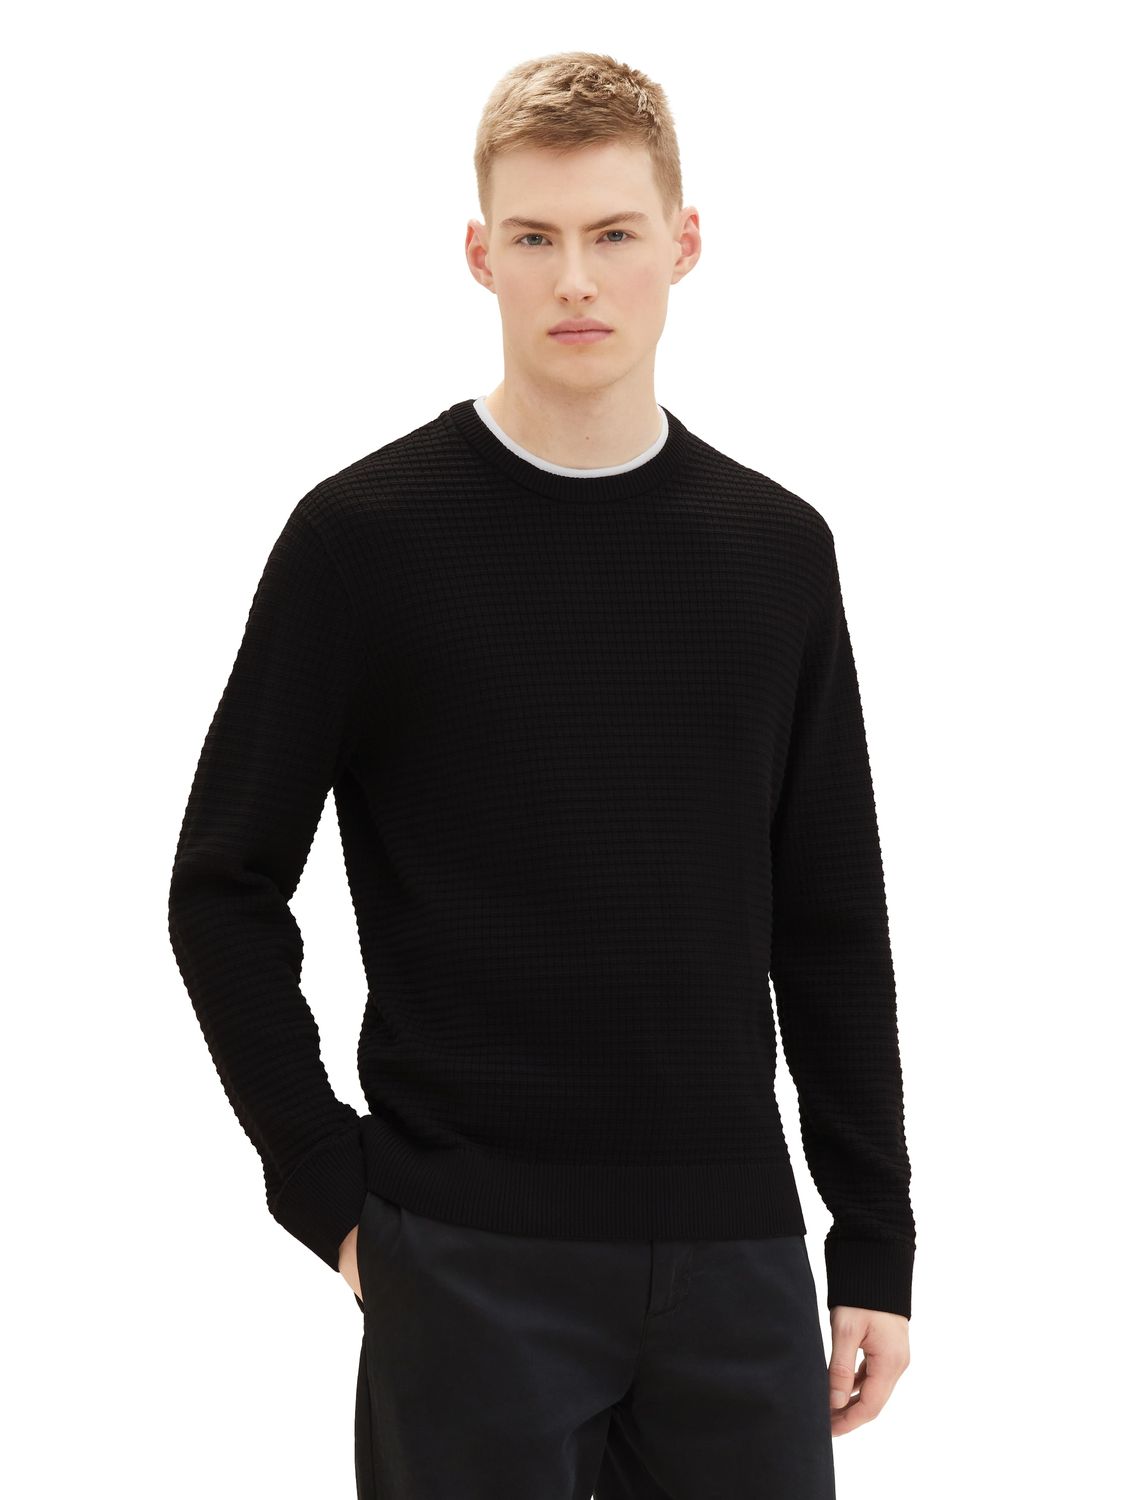 Пуловер TOM TAILOR Denim STRUCTURED DOUBLELAYER, черный пуловер tom tailor denim structured doublelayer синий